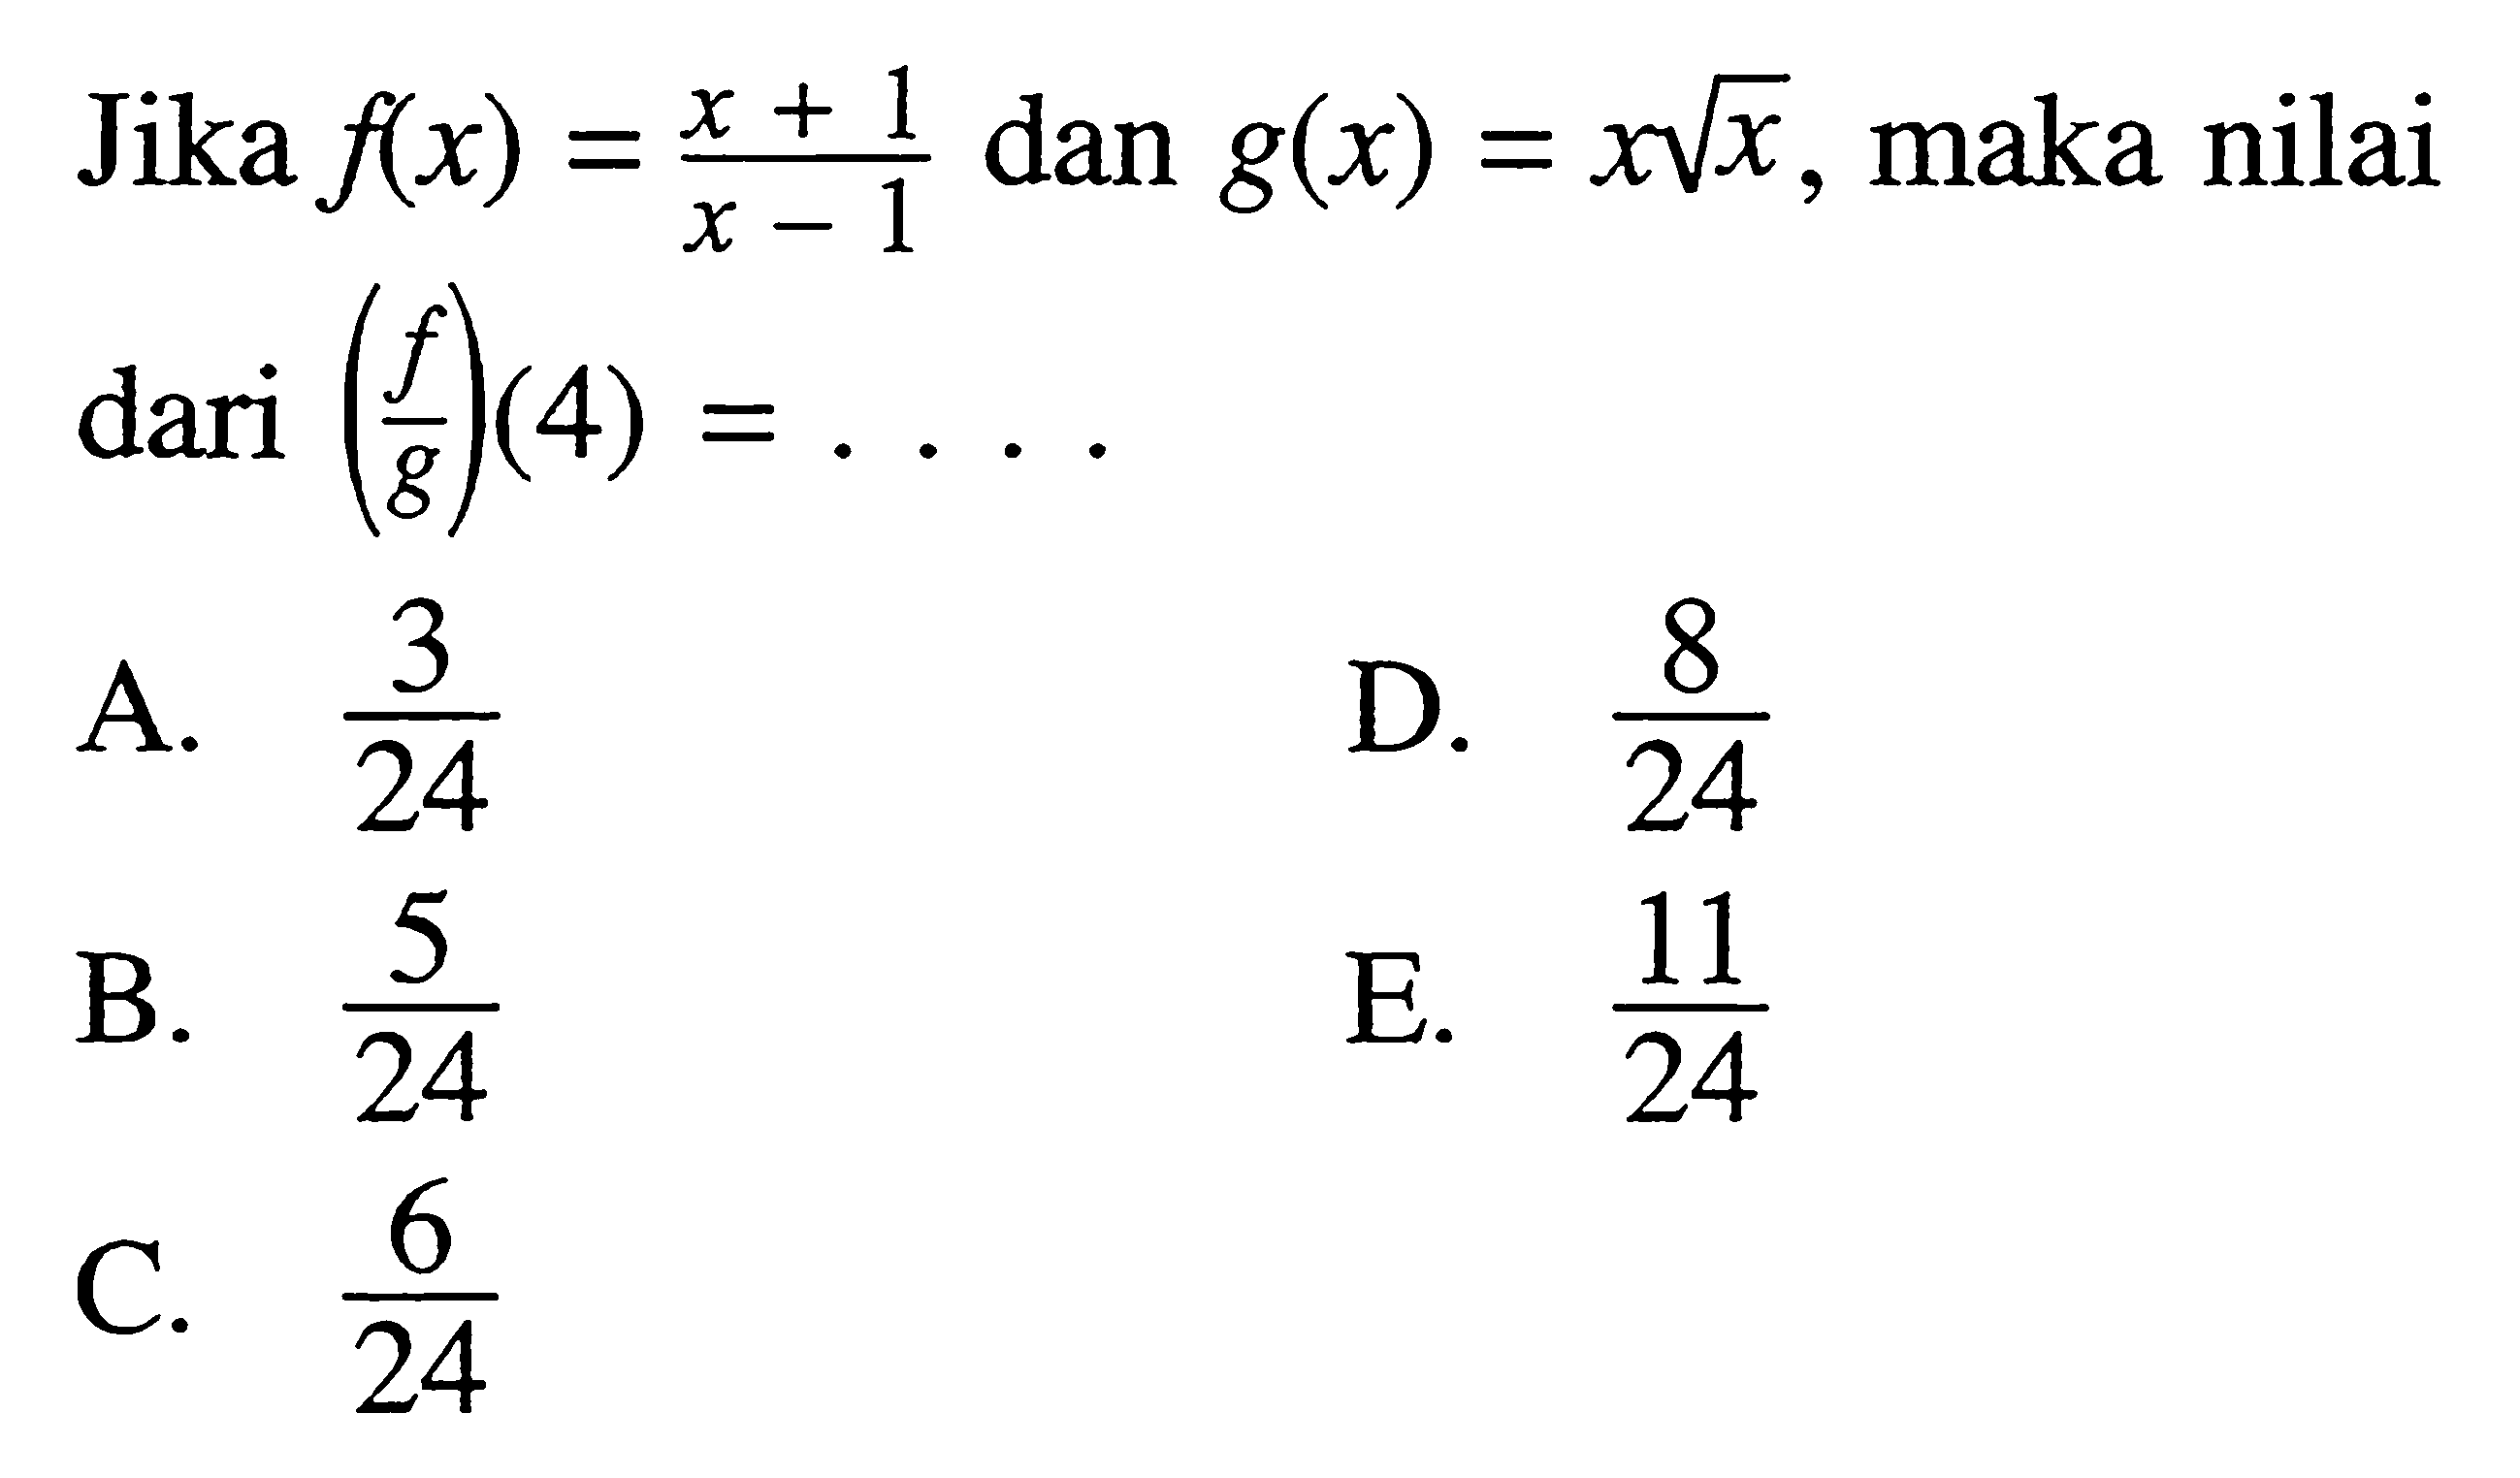 Jika f(x)=(x+1)/(x-1) dan g(x)=xakar(x), maka nilai dari(f/g)(4)= ... 